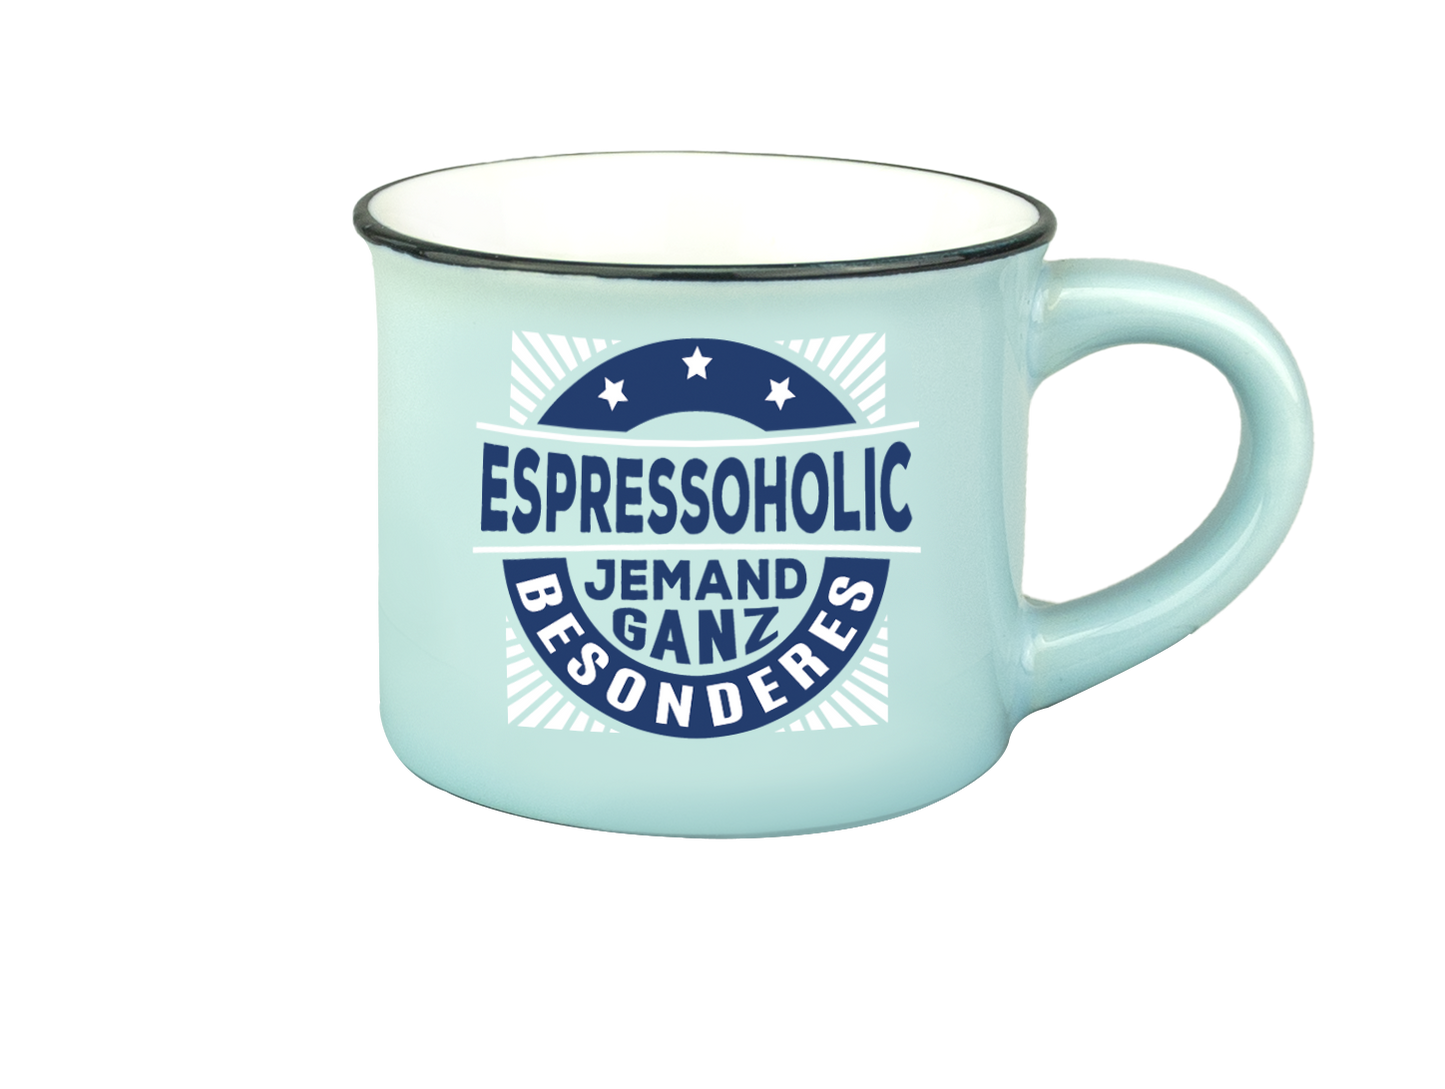 H & H Espresso-Tasse - Espressoholic jemand ganz besonderes